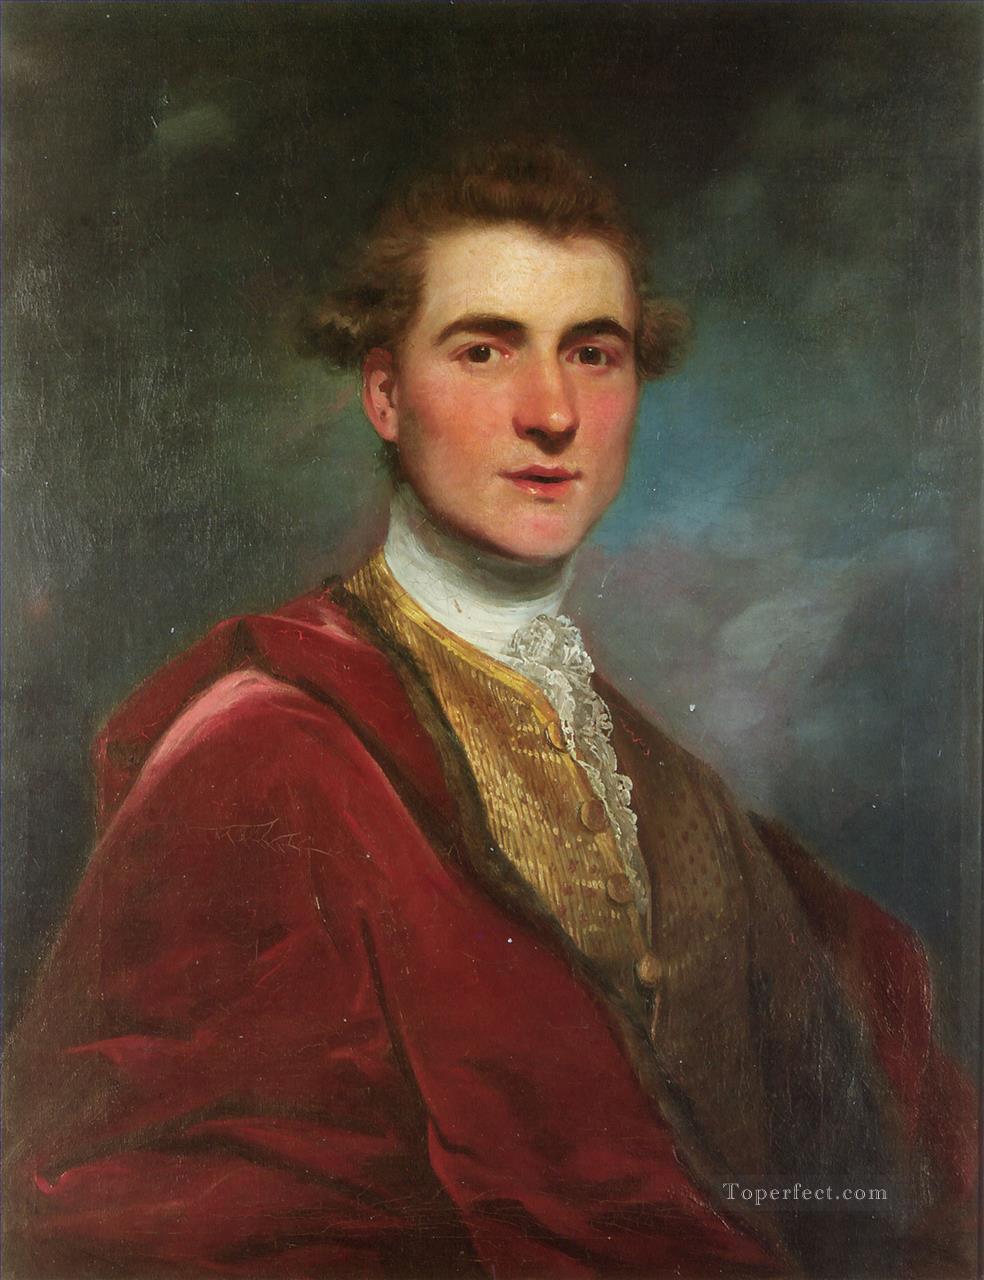 チャールズ・ハミルトン・ジョシュア・レイノルズの肖像油絵